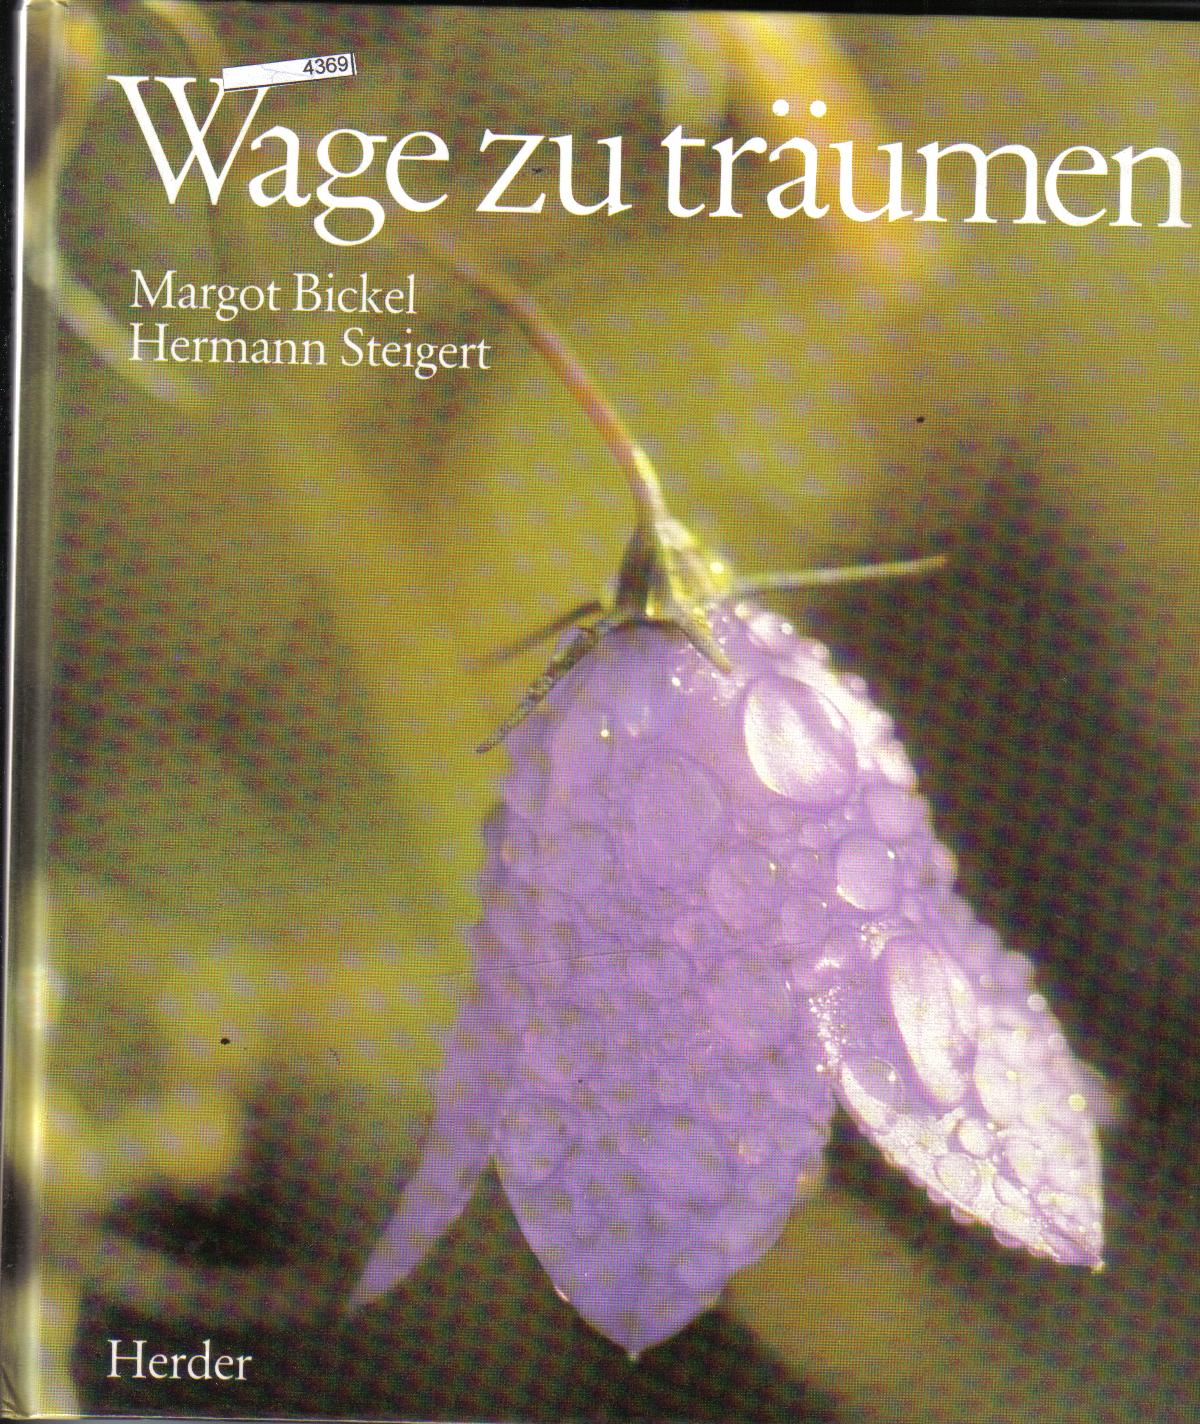 Wage zu traeumenMargot Bickel / Hermann Steigert